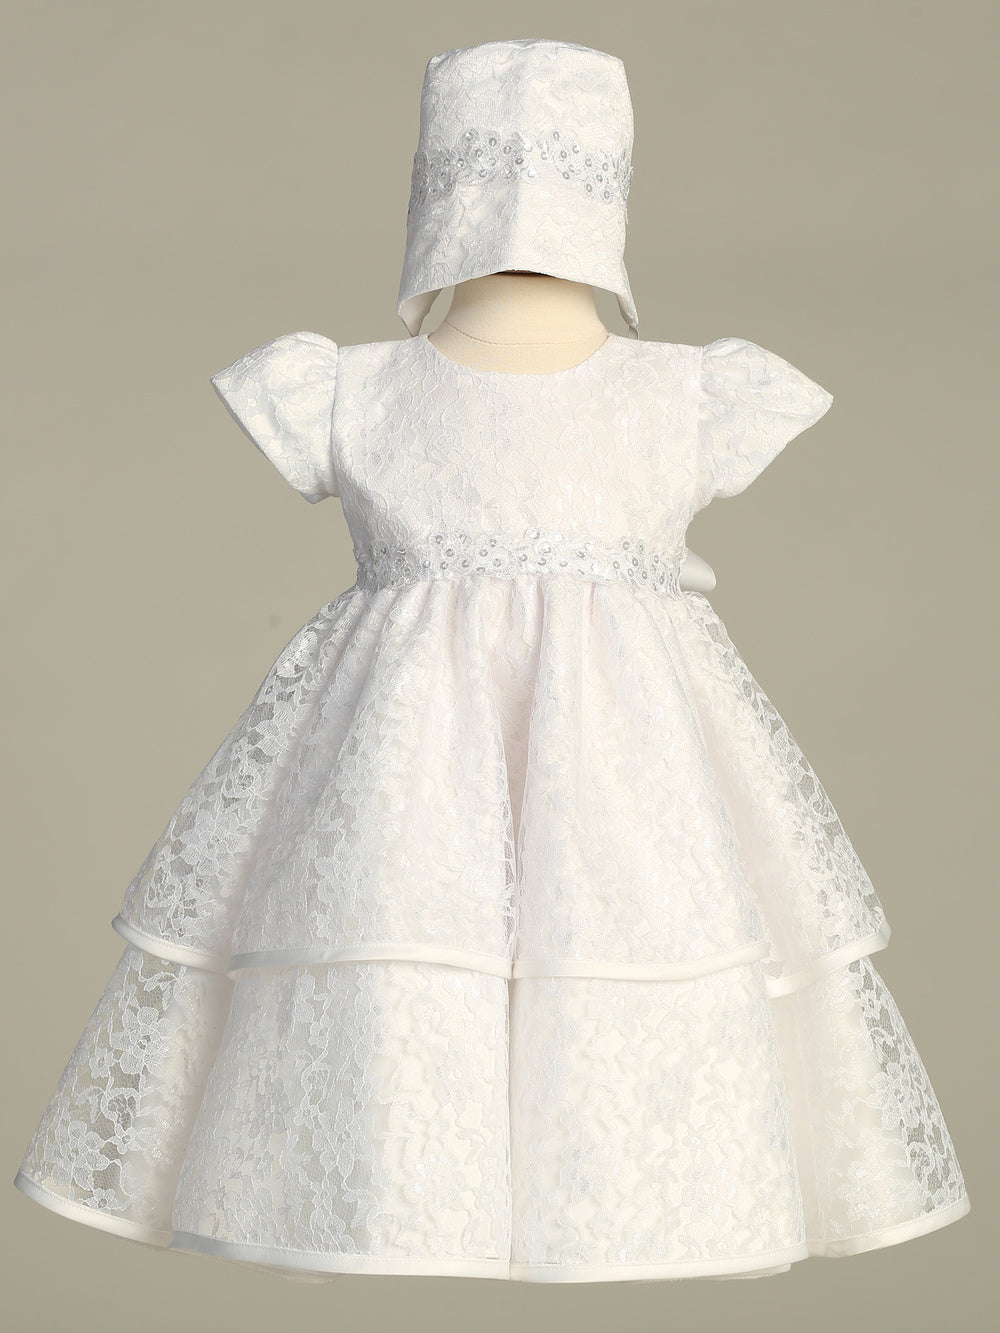 Girls White Christening & Baptism Dress - Tiffany